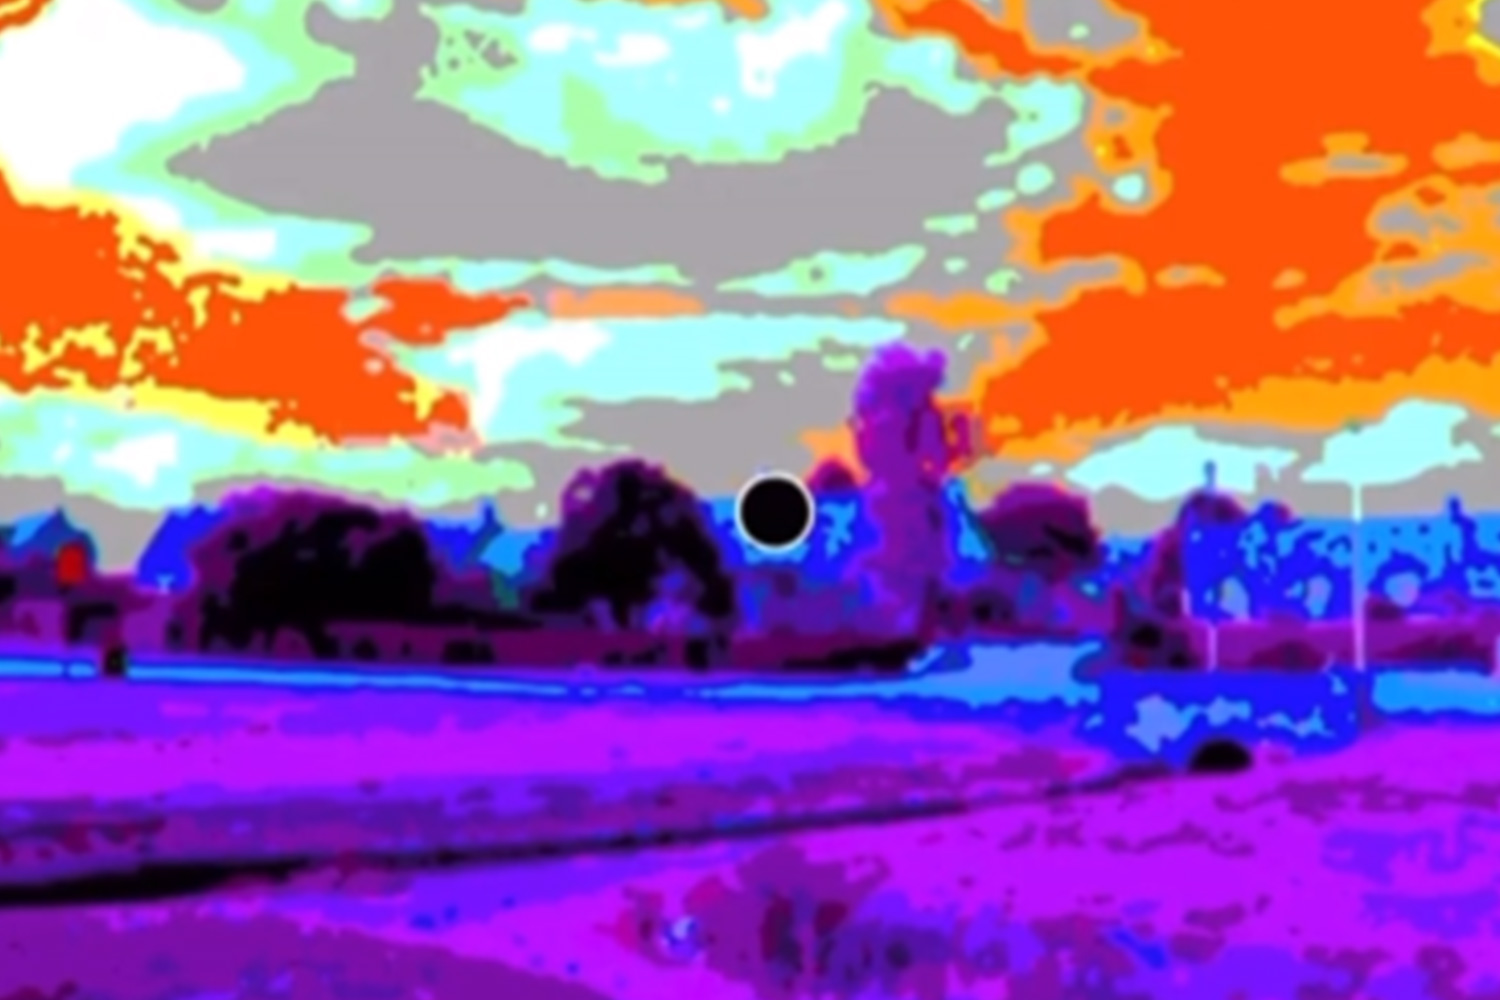 El clip comienza mostrando una imagen en color del campo.